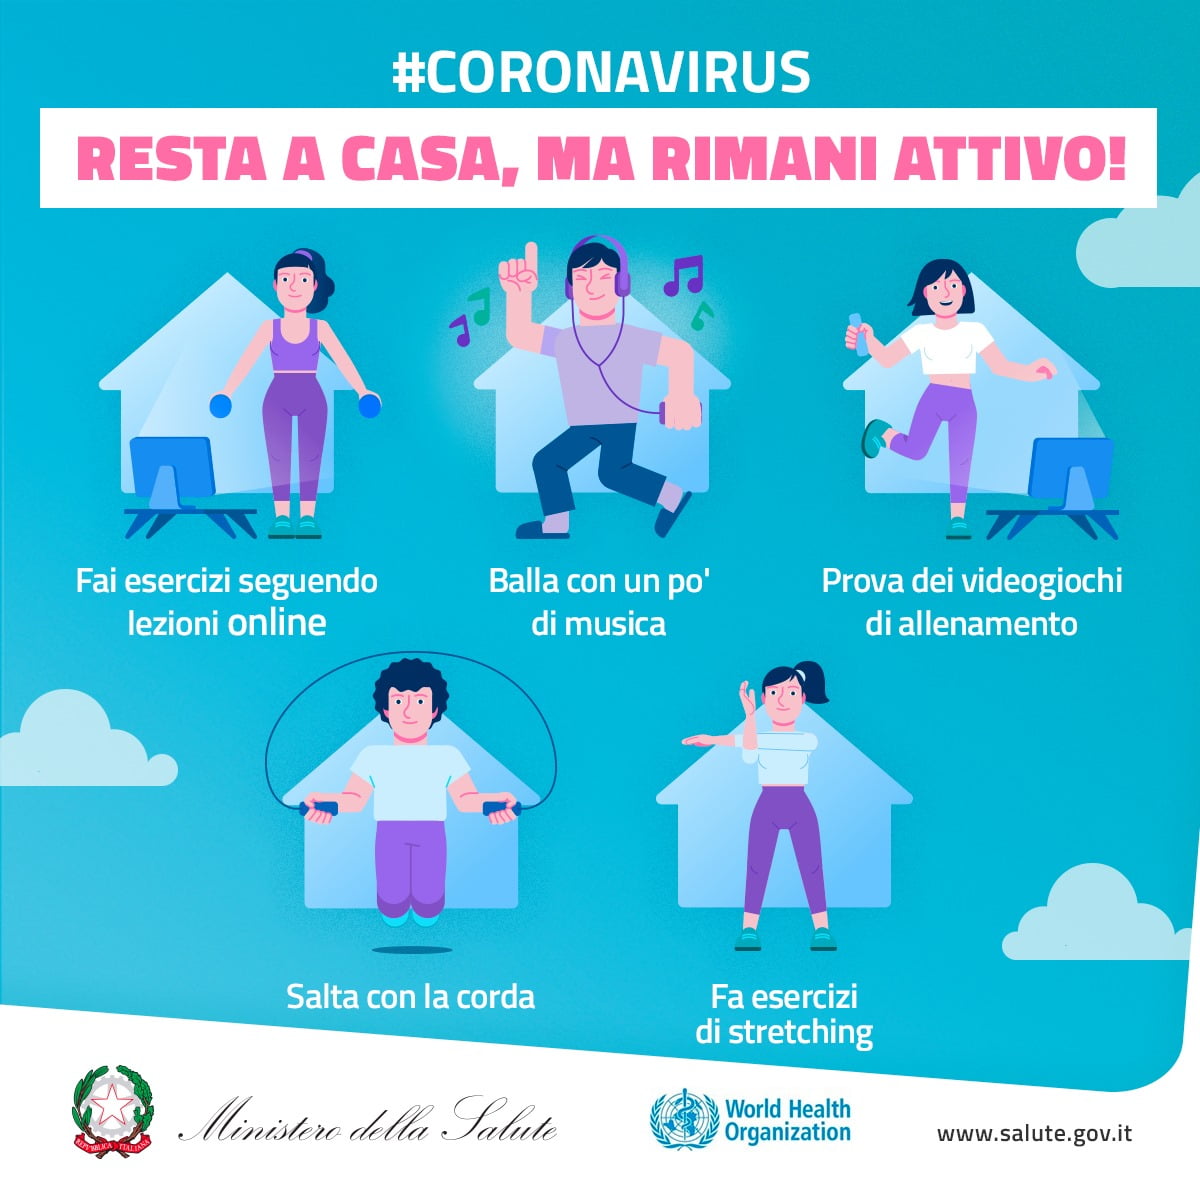 Coronavirus Le Linee Guida Del Ministero Della Salute Sull Attivita Fisica Spiegate Bene Bikeitalia It